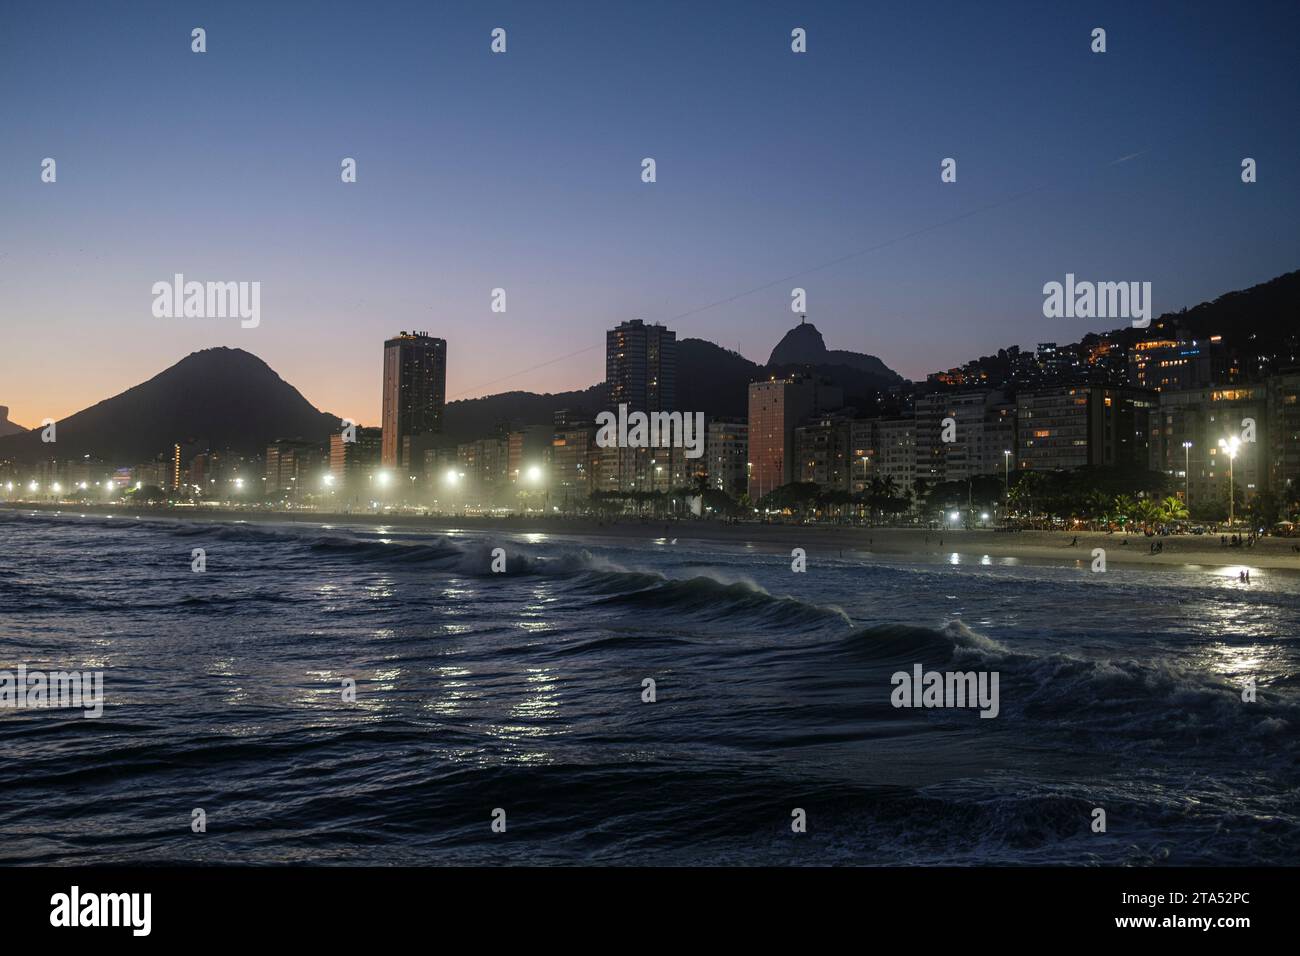 Leme et la plage de Copacabana au coucher du soleil, Rio de Janeiro, Brésil. Christ Rédempteur et Favela Morro da Babilonia à droite derrière les bâtiments du front de mer. Banque D'Images